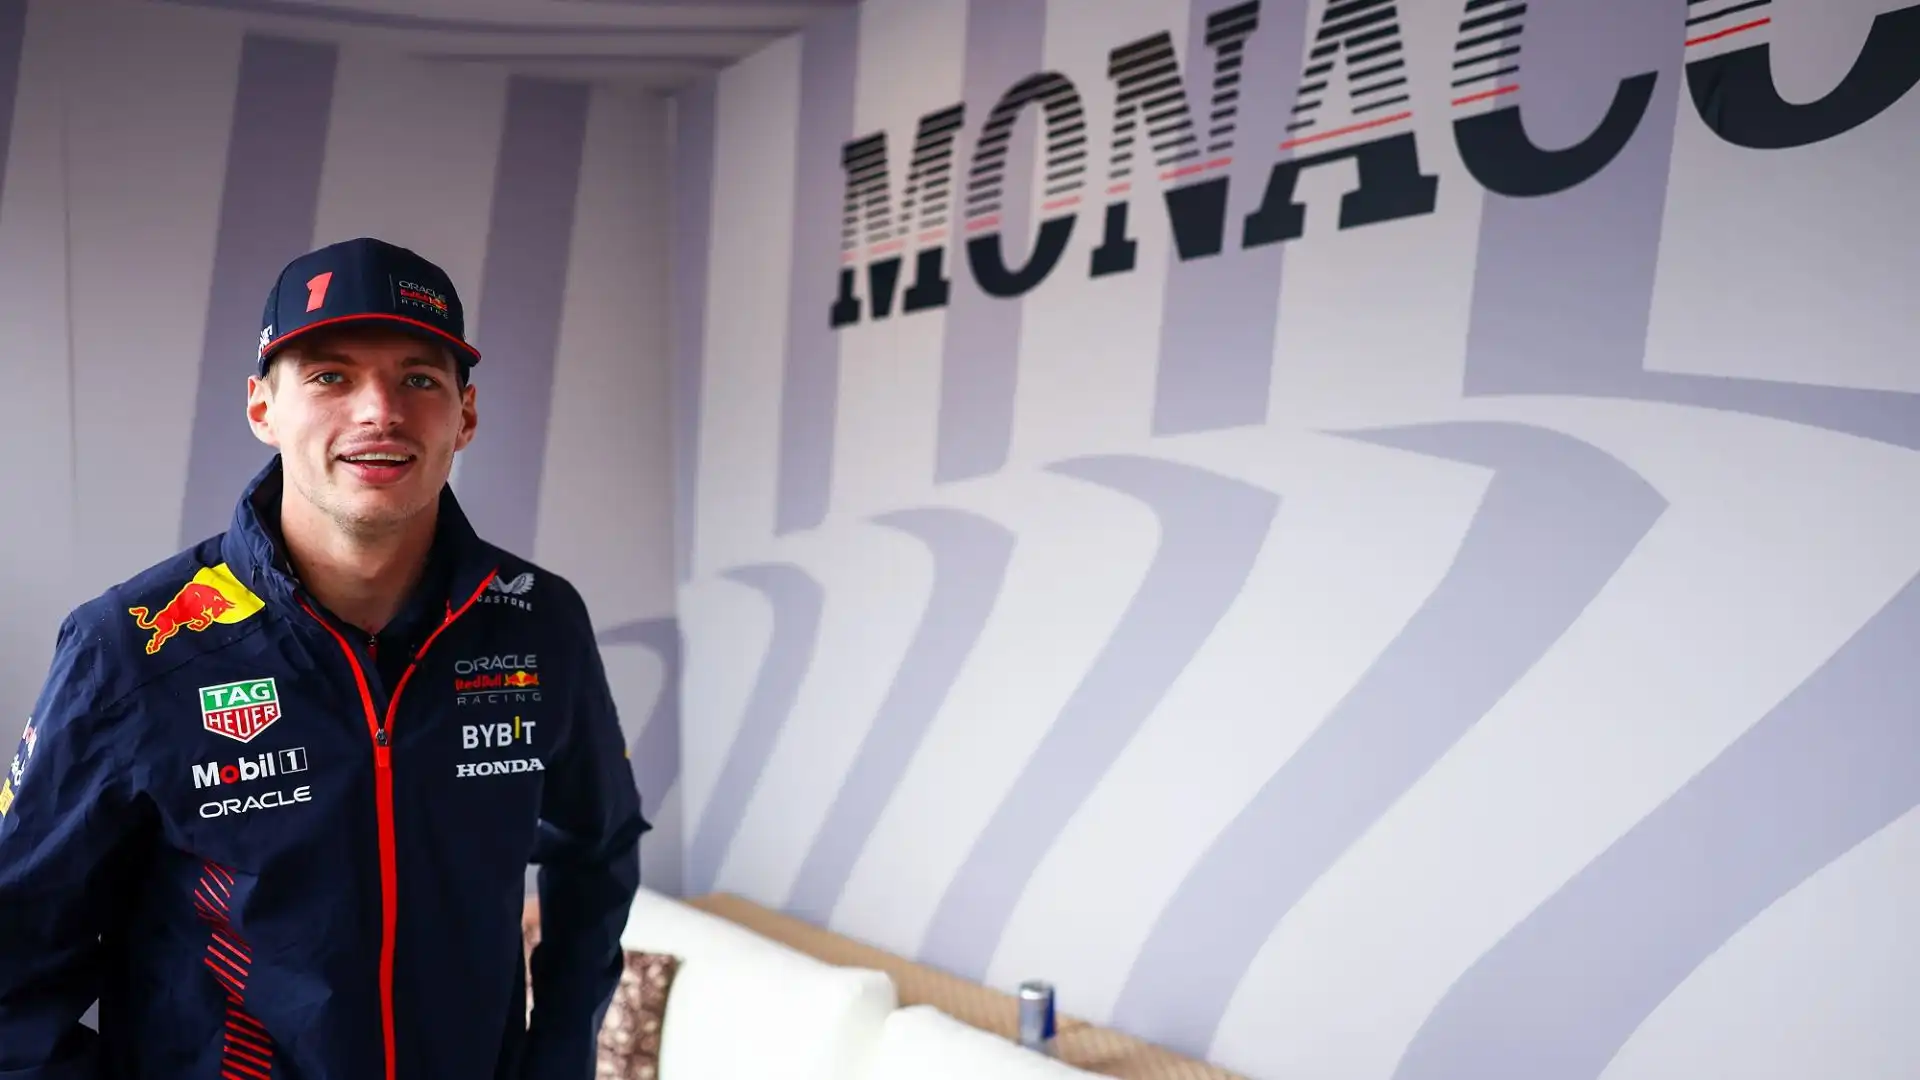 Domenica il pilota campione del mondo va a caccia della sua seconda vittoria in carriera nel Gran Premio del Principato di Monaco